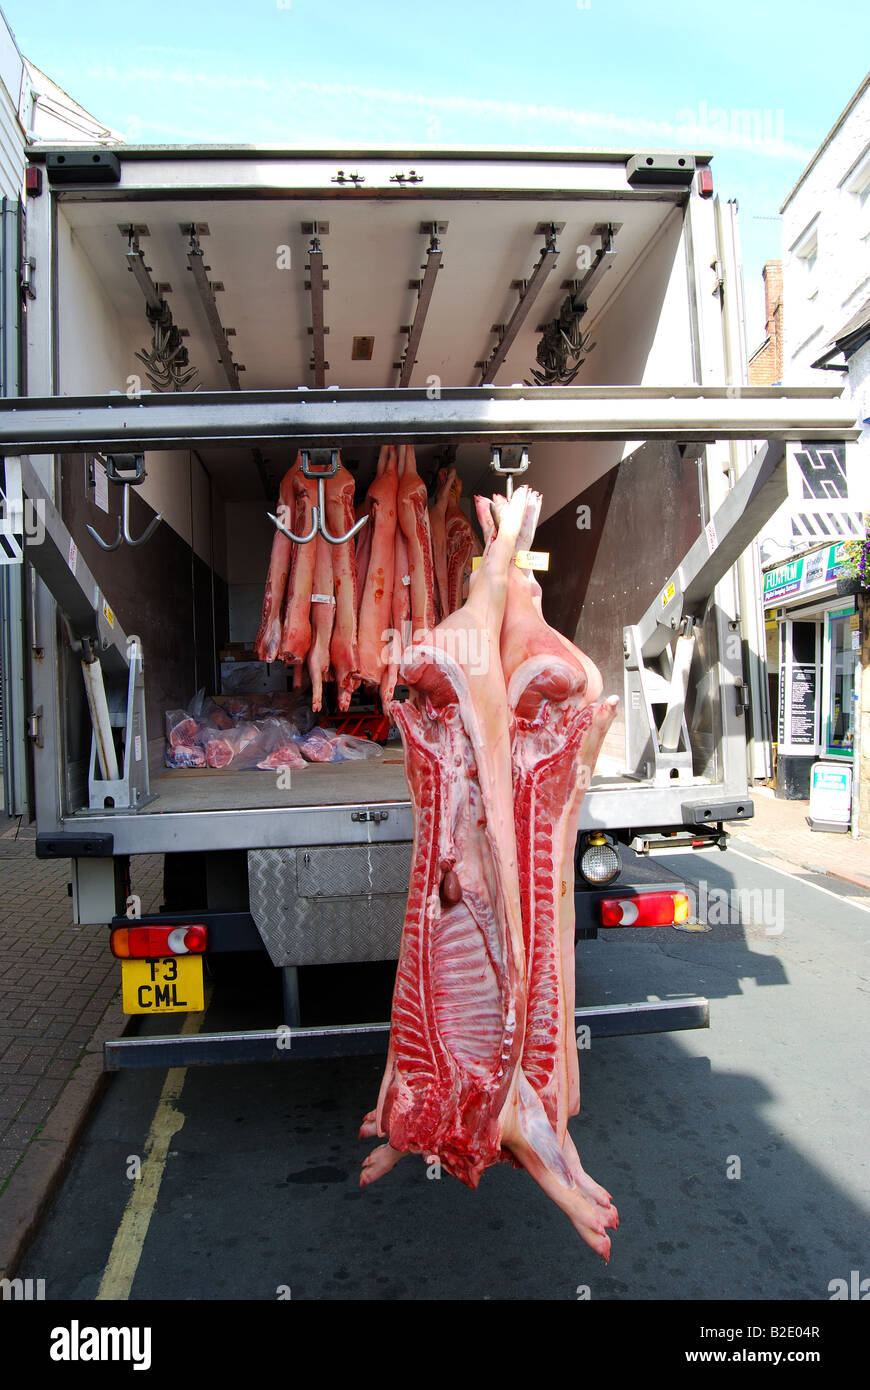 La viande de la carcasse de camion remis au réfrigérateur, Parsons Street, Banbury, Oxfordshire, Angleterre, Royaume-Uni Banque D'Images